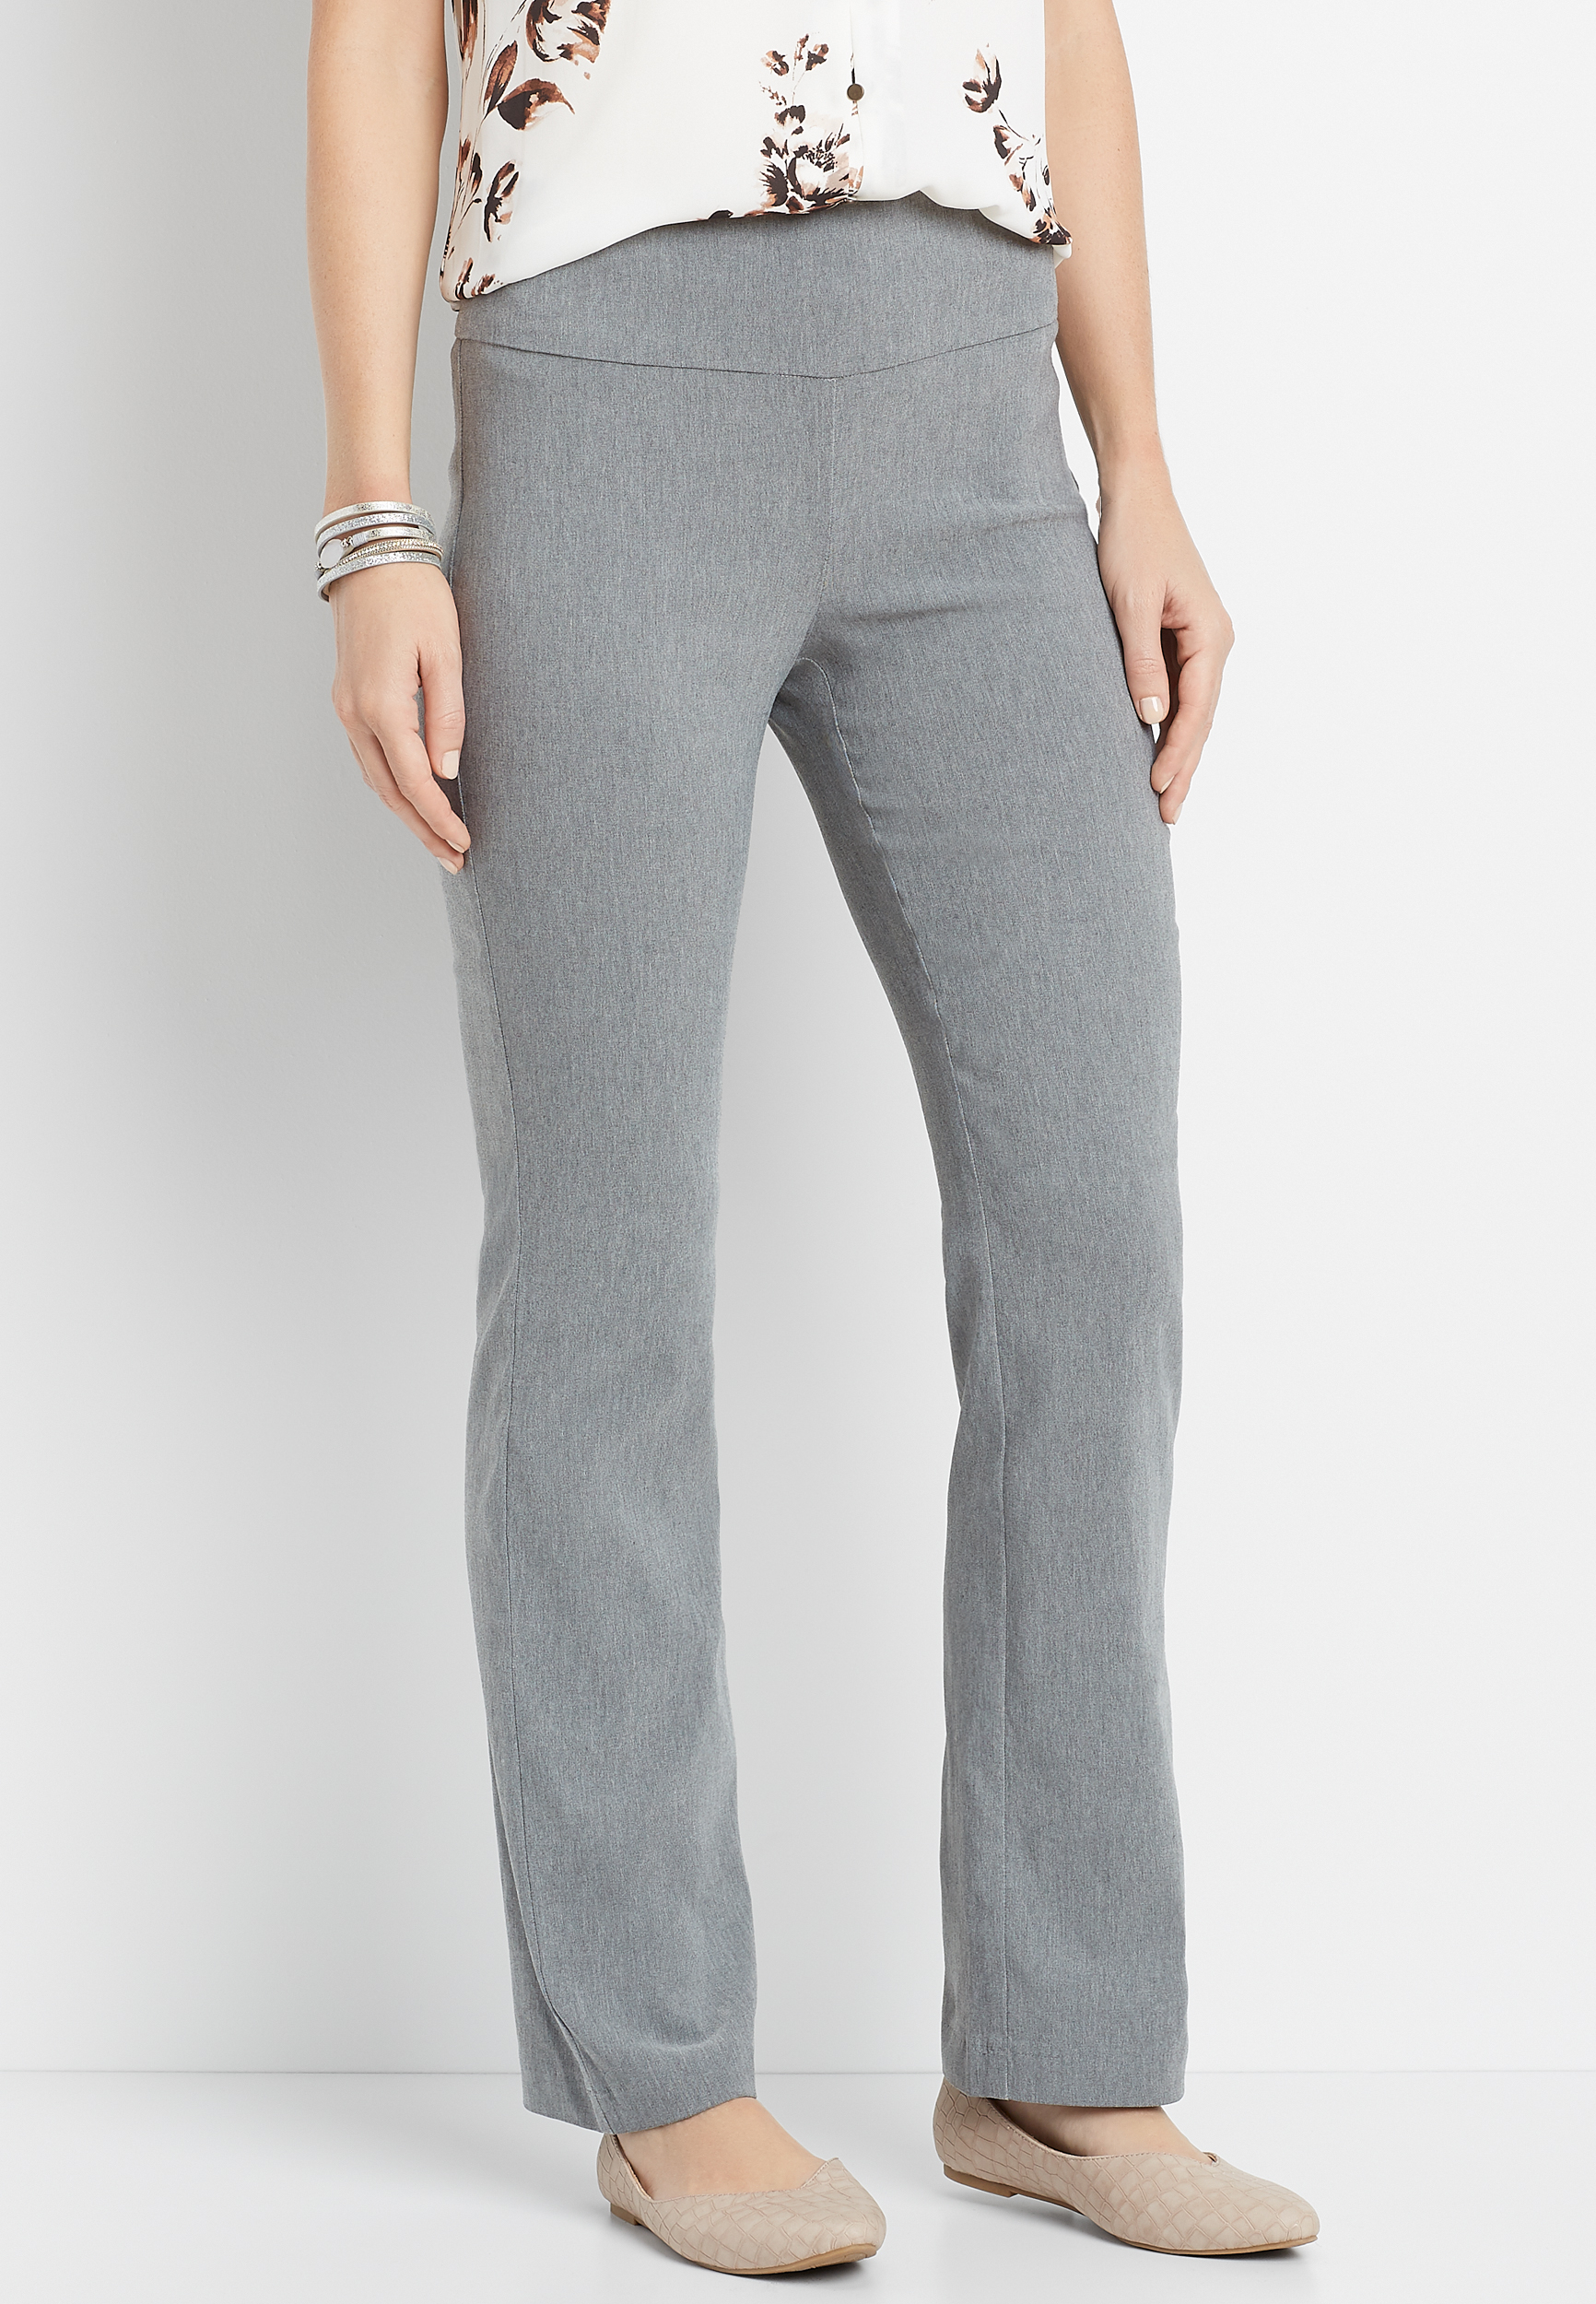 gray bootcut pants